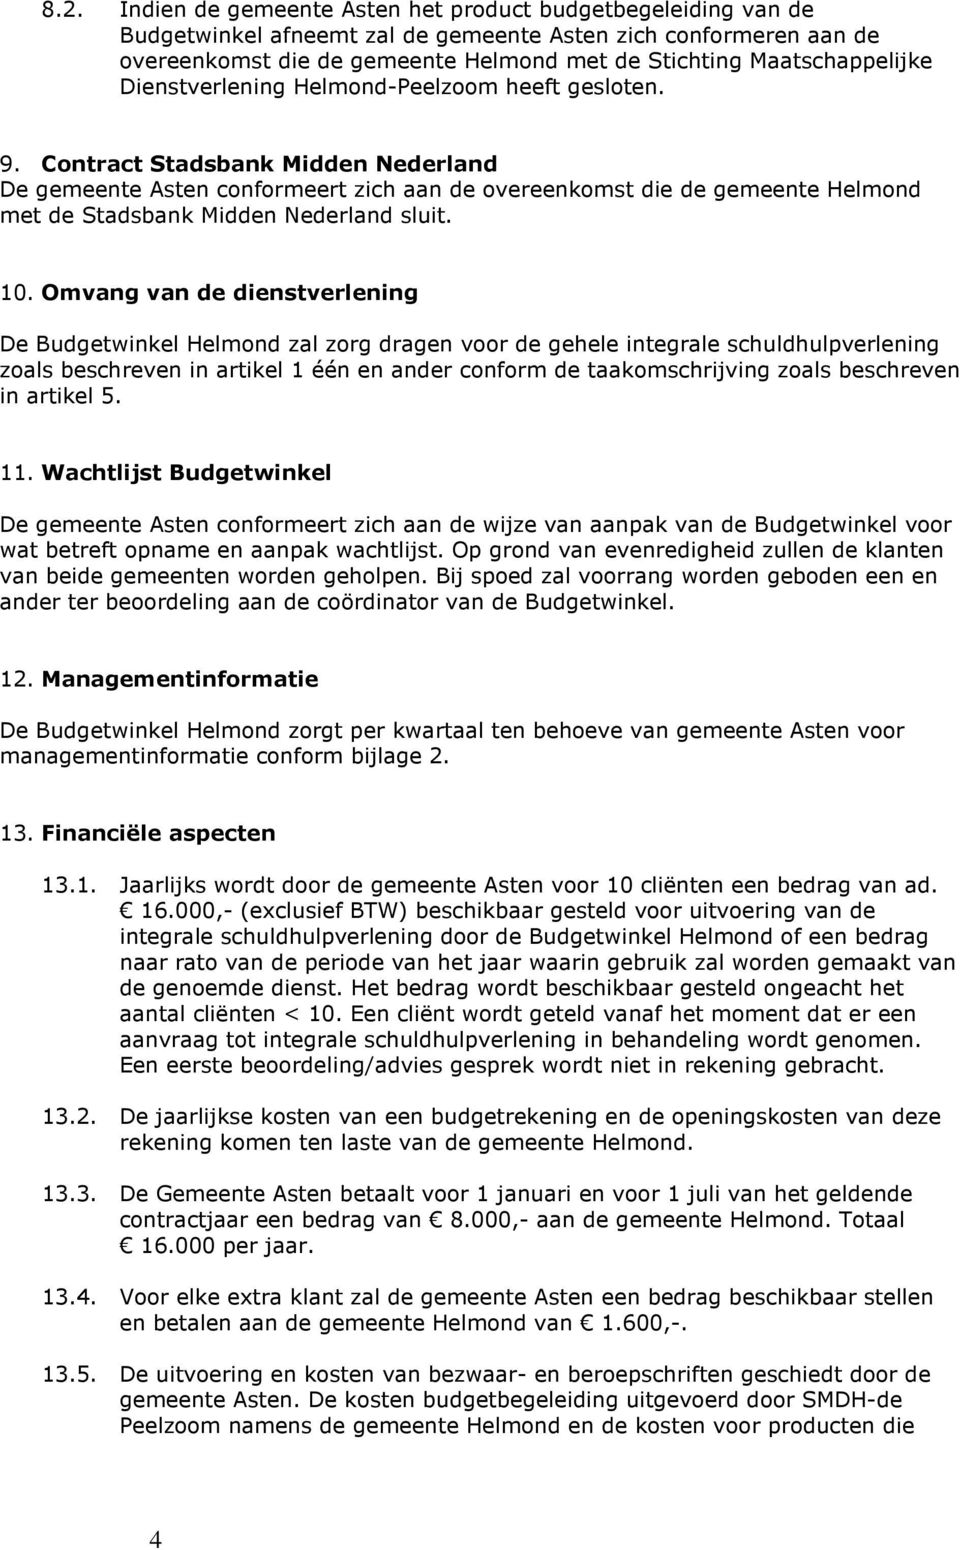 Contract Stadsbank Midden Nederland De gemeente Asten conformeert zich aan de overeenkomst die de gemeente Helmond met de Stadsbank Midden Nederland sluit. 10.